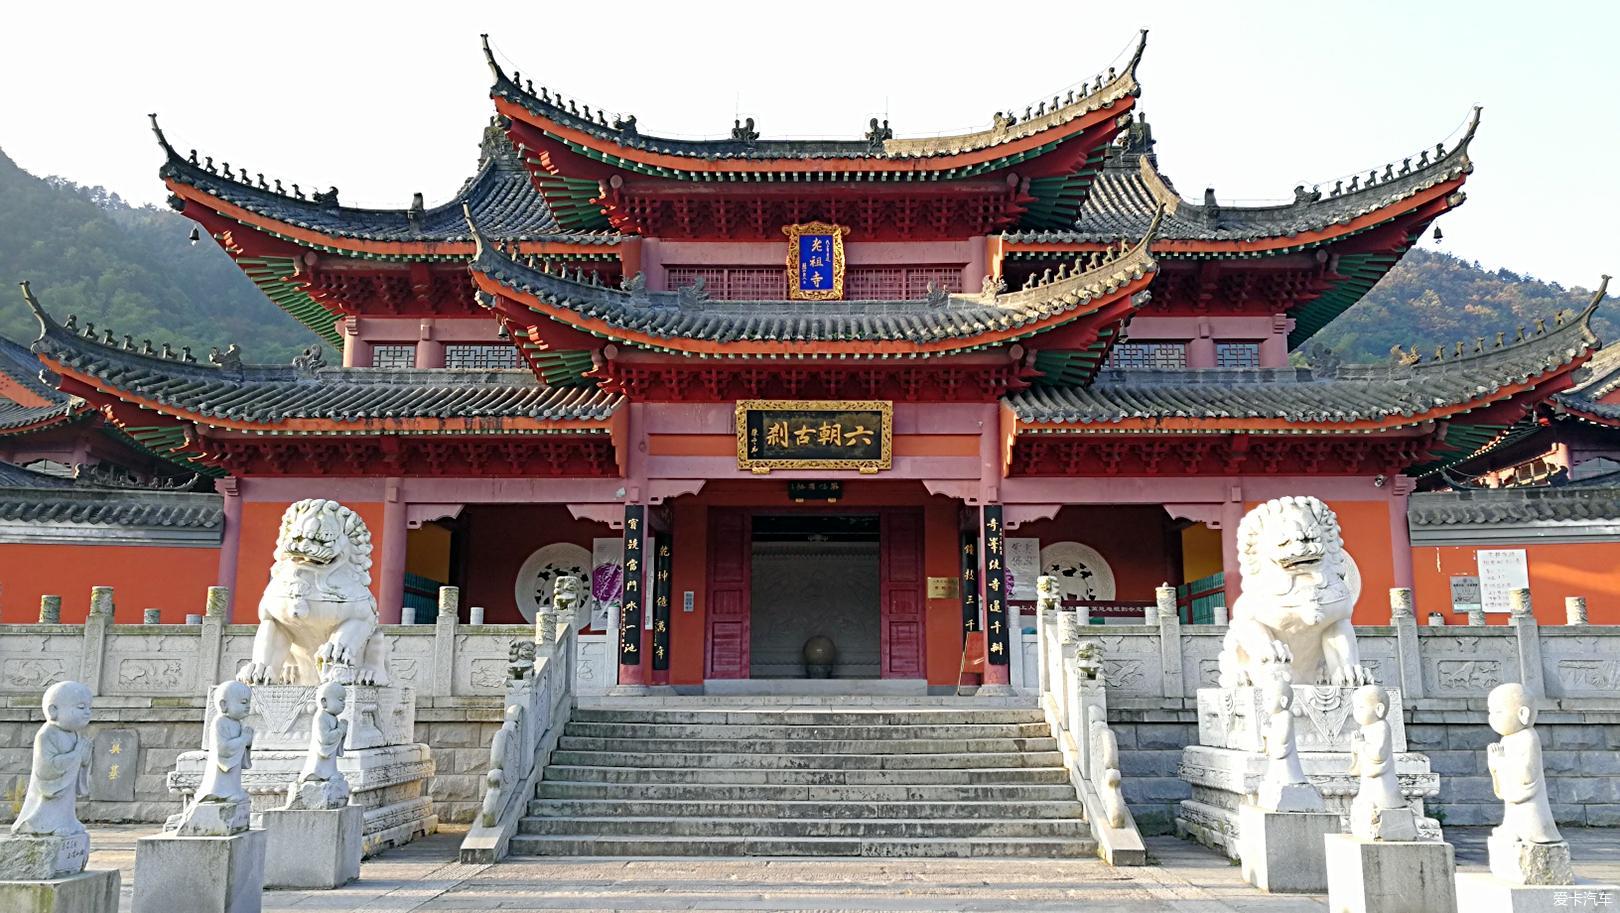 老祖寺  老祖寺,古名紫云山寺,坐落于黄梅县境北端的紫云山莲花峰下